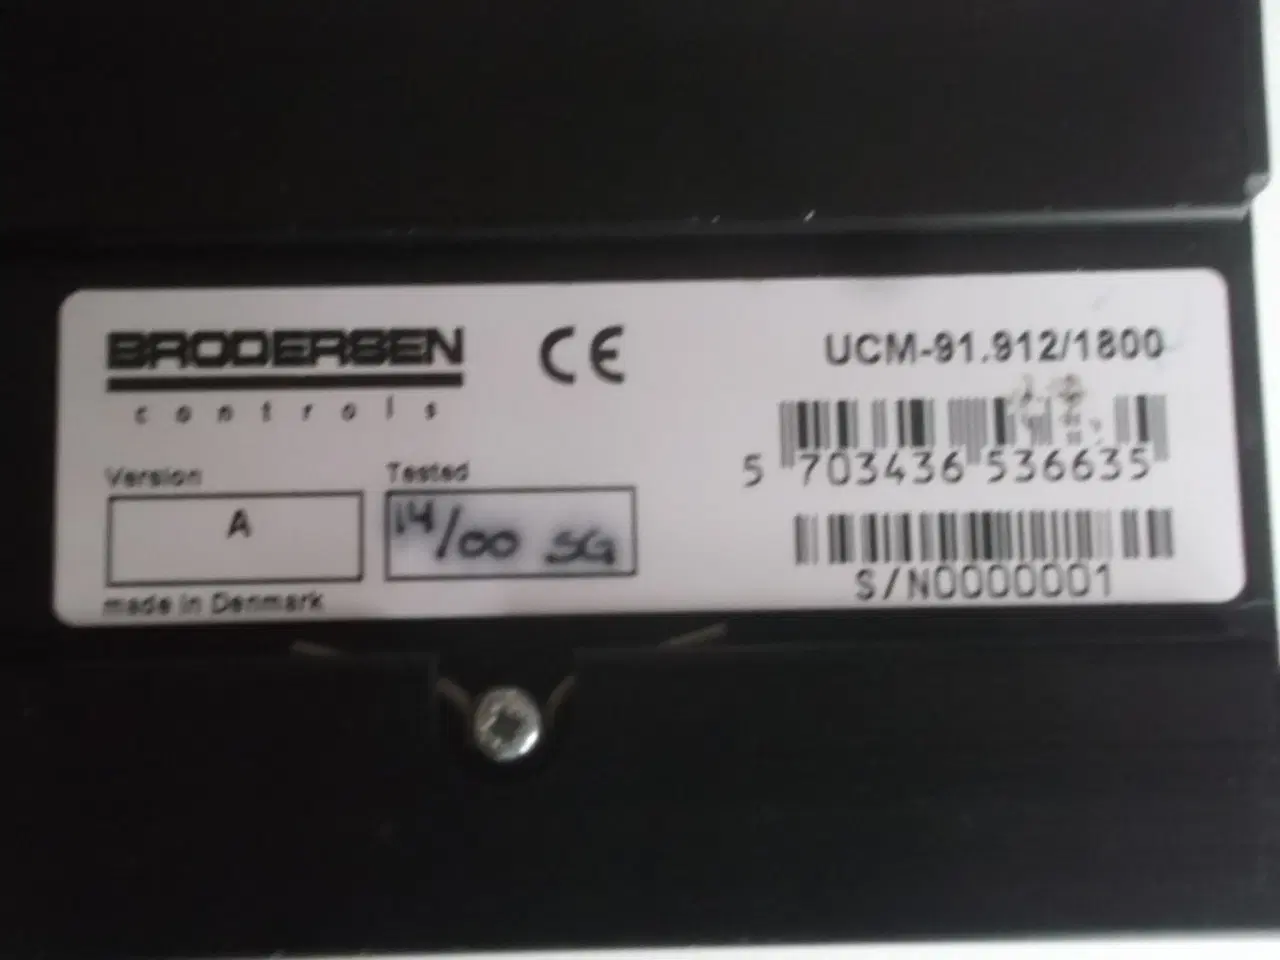 Billede 3 - Brodersen Controls GSM modem UCM-92.912/1800.